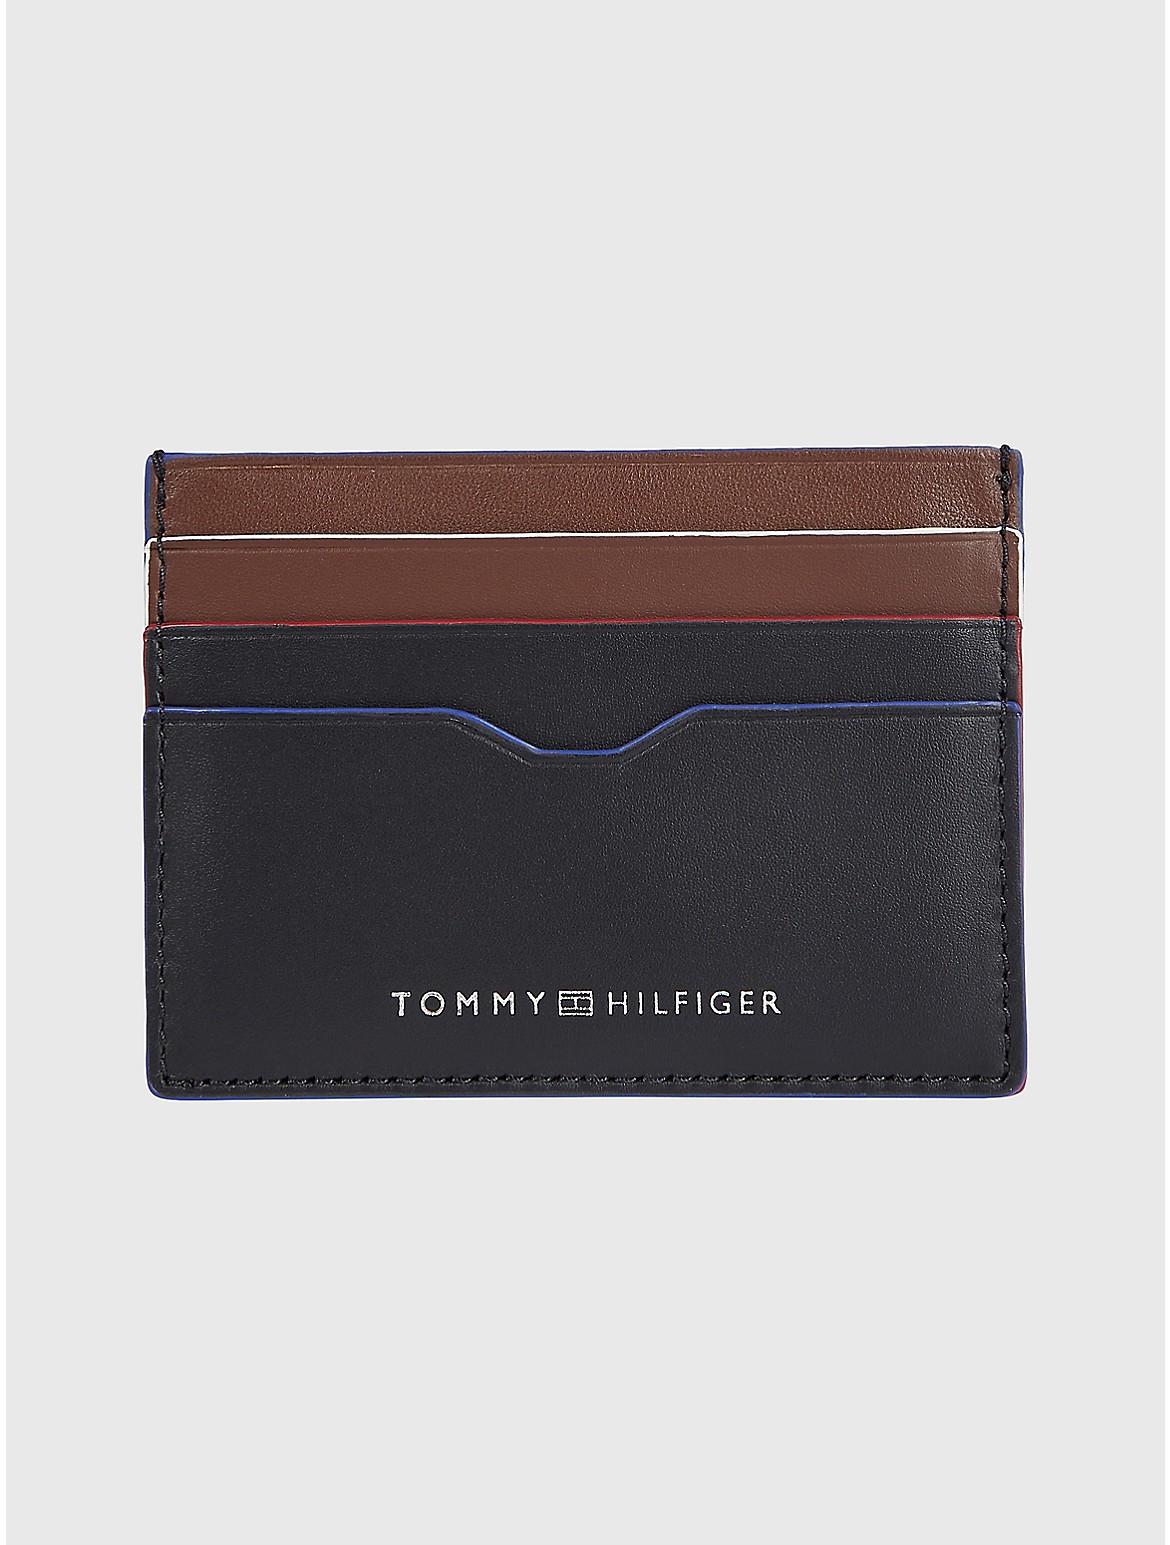 Tommy Hilfiger Men's Leather Card Holder - Black